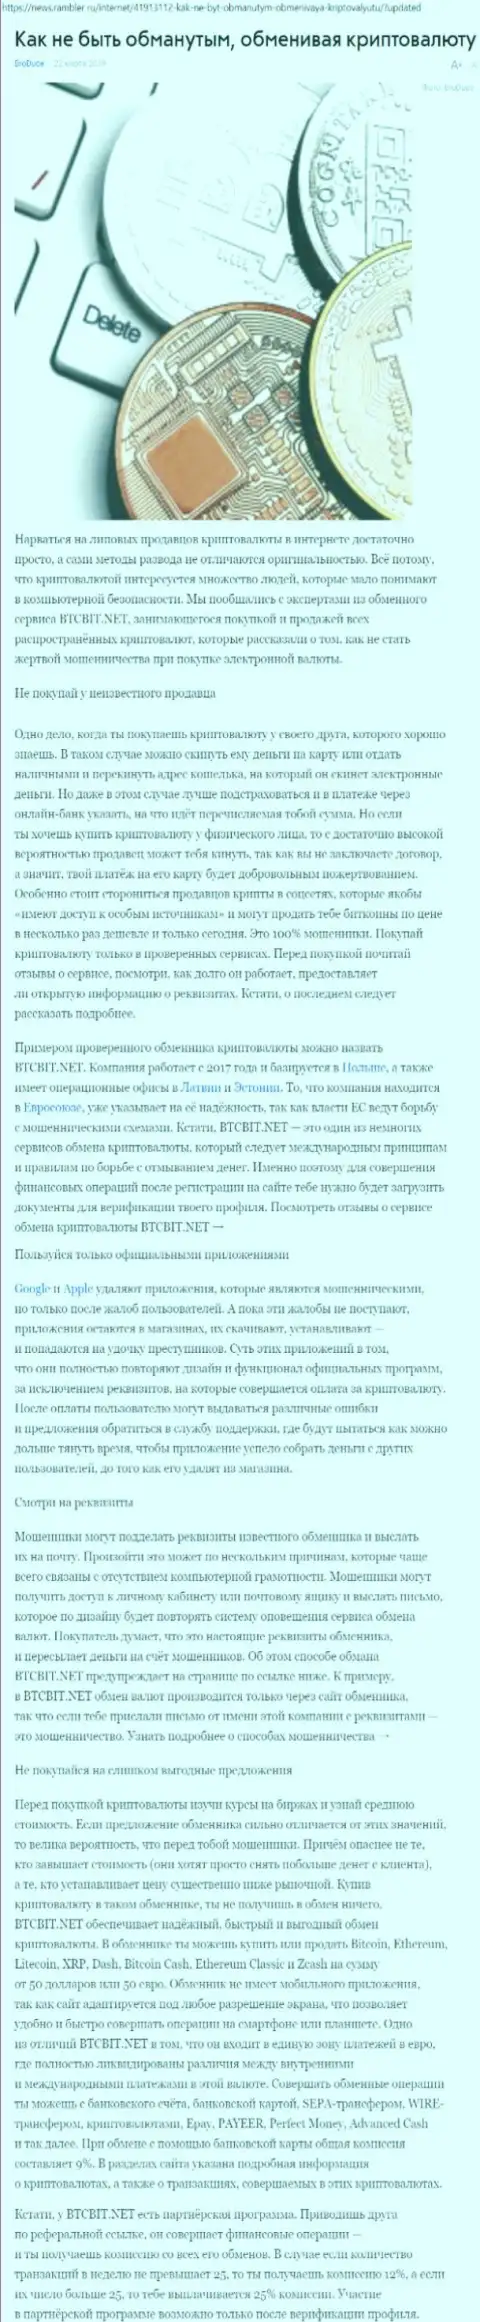 Статья об обменнике BTCBit на news rambler ru